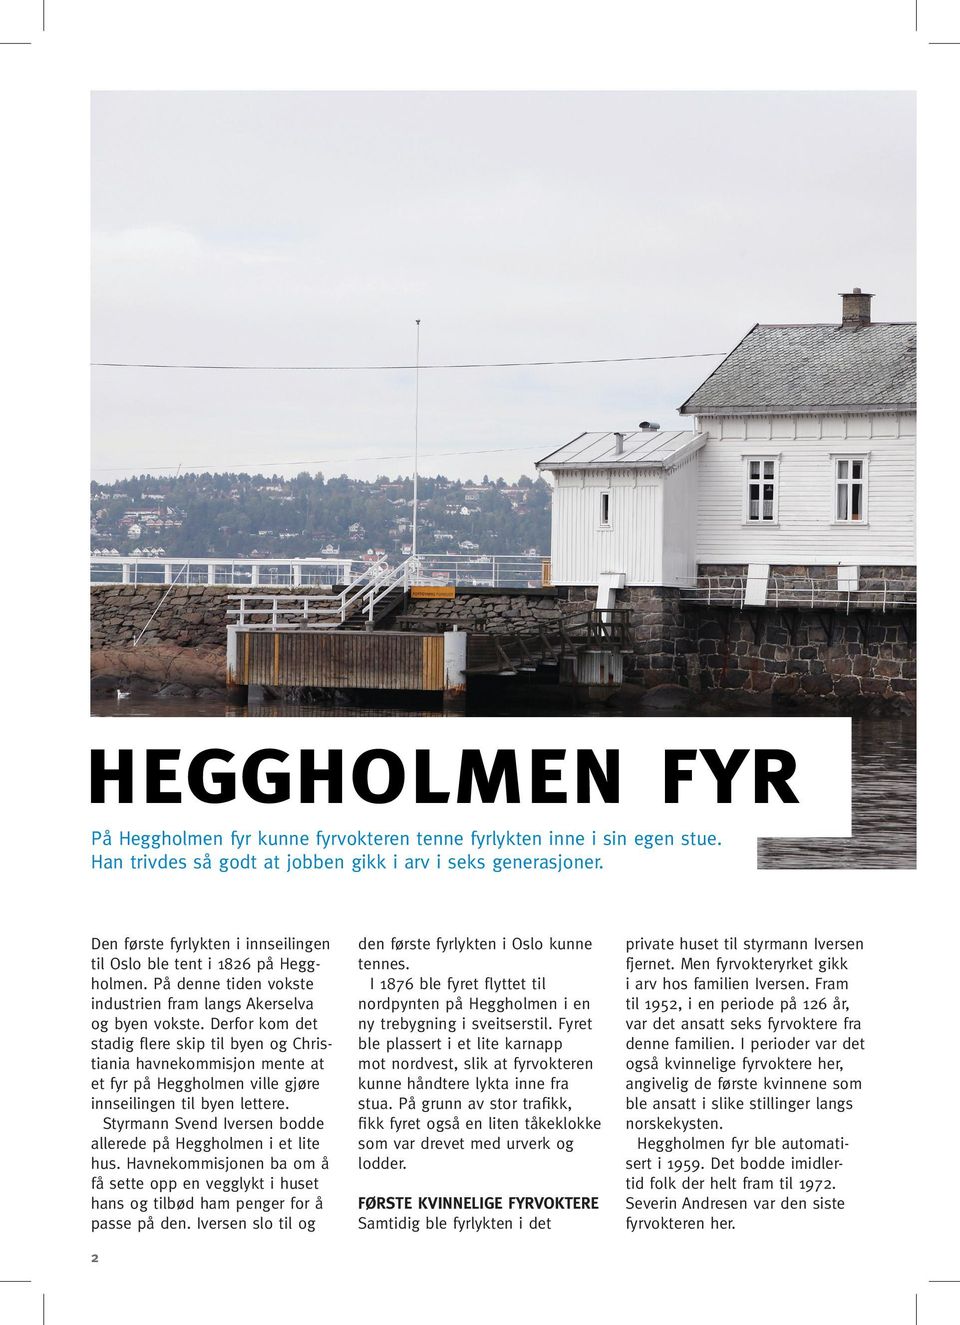 Derfor kom det stadig flere skip til byen og Christiania havnekommisjon mente at et fyr på Heggholmen ville gjøre innseilingen til byen lettere.